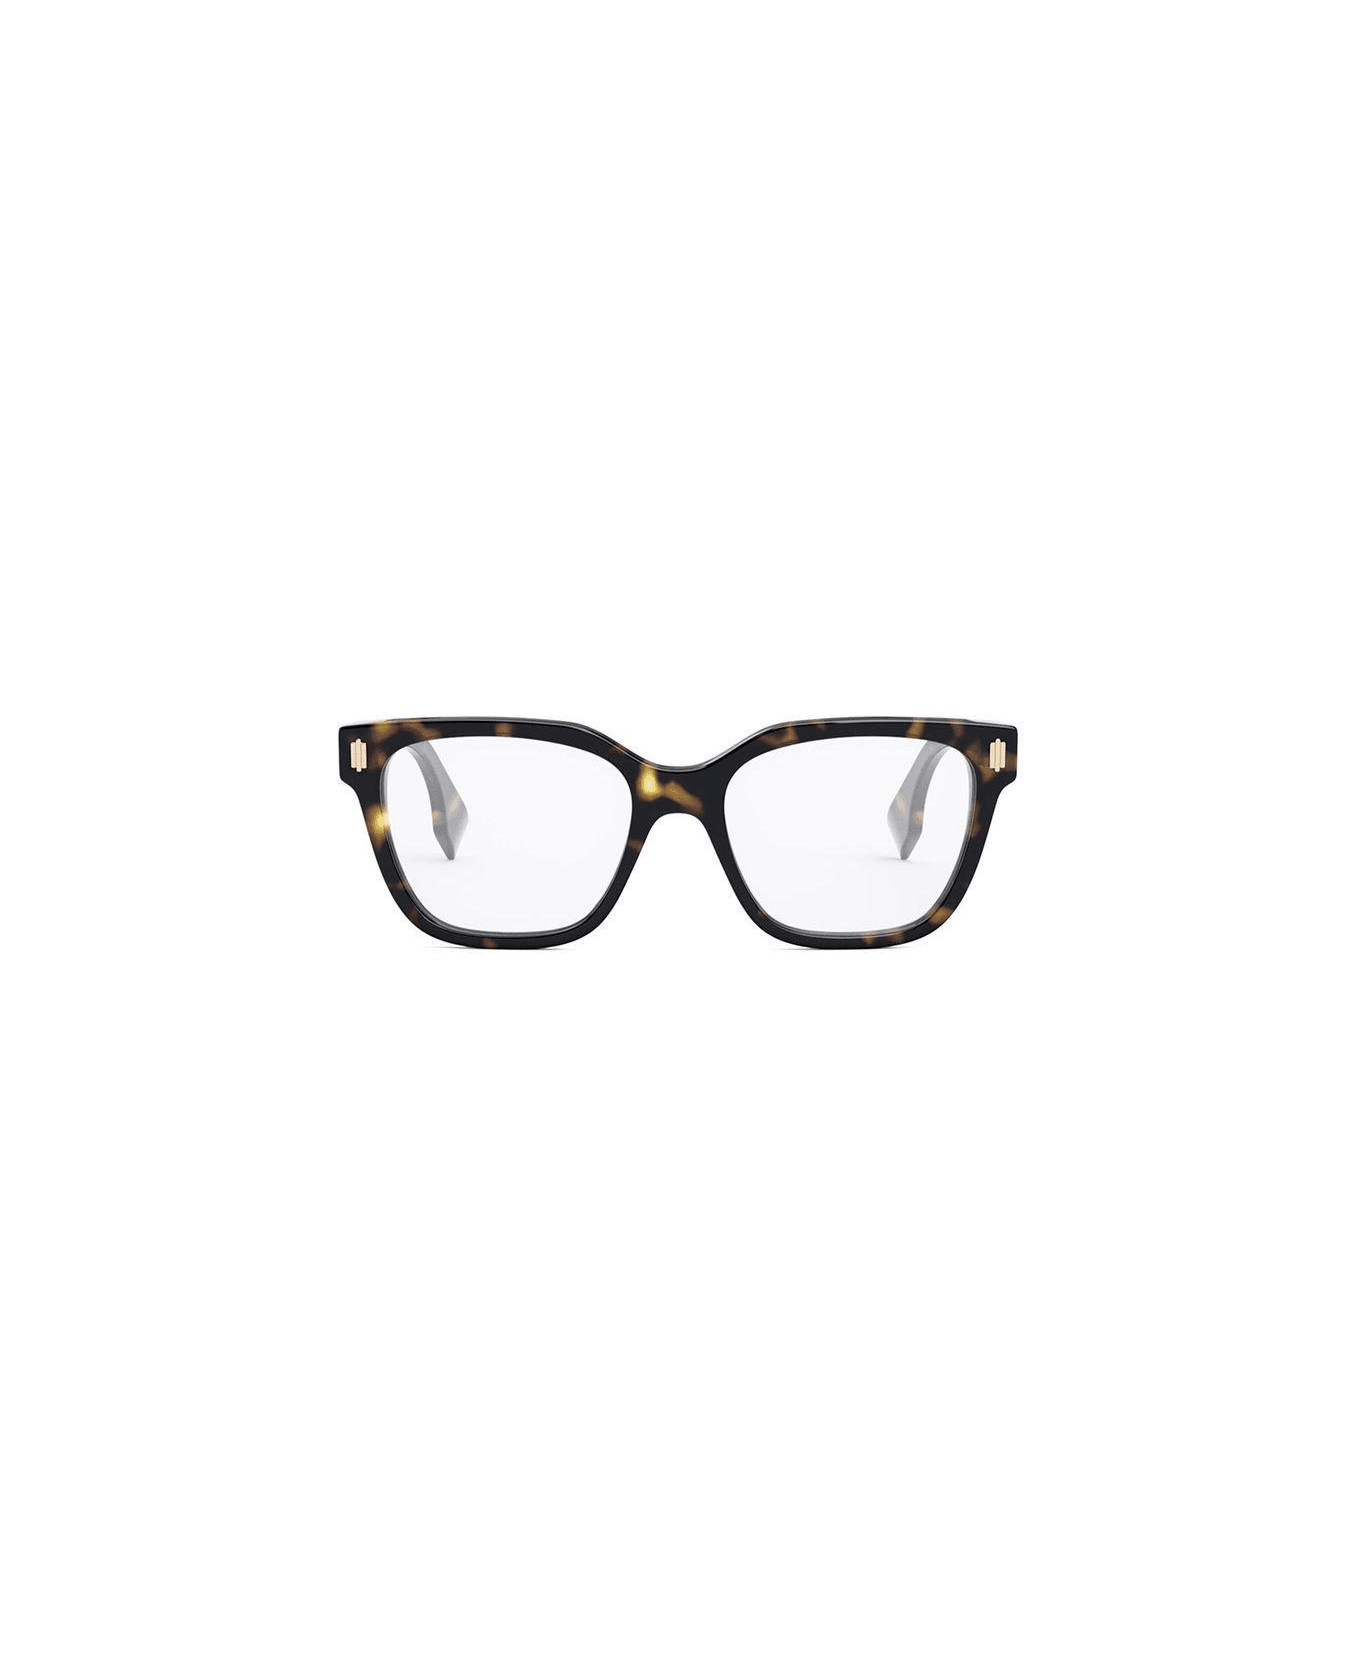 Fendi Eyewear Rectangle Frame Glasses - 052 アイウェア